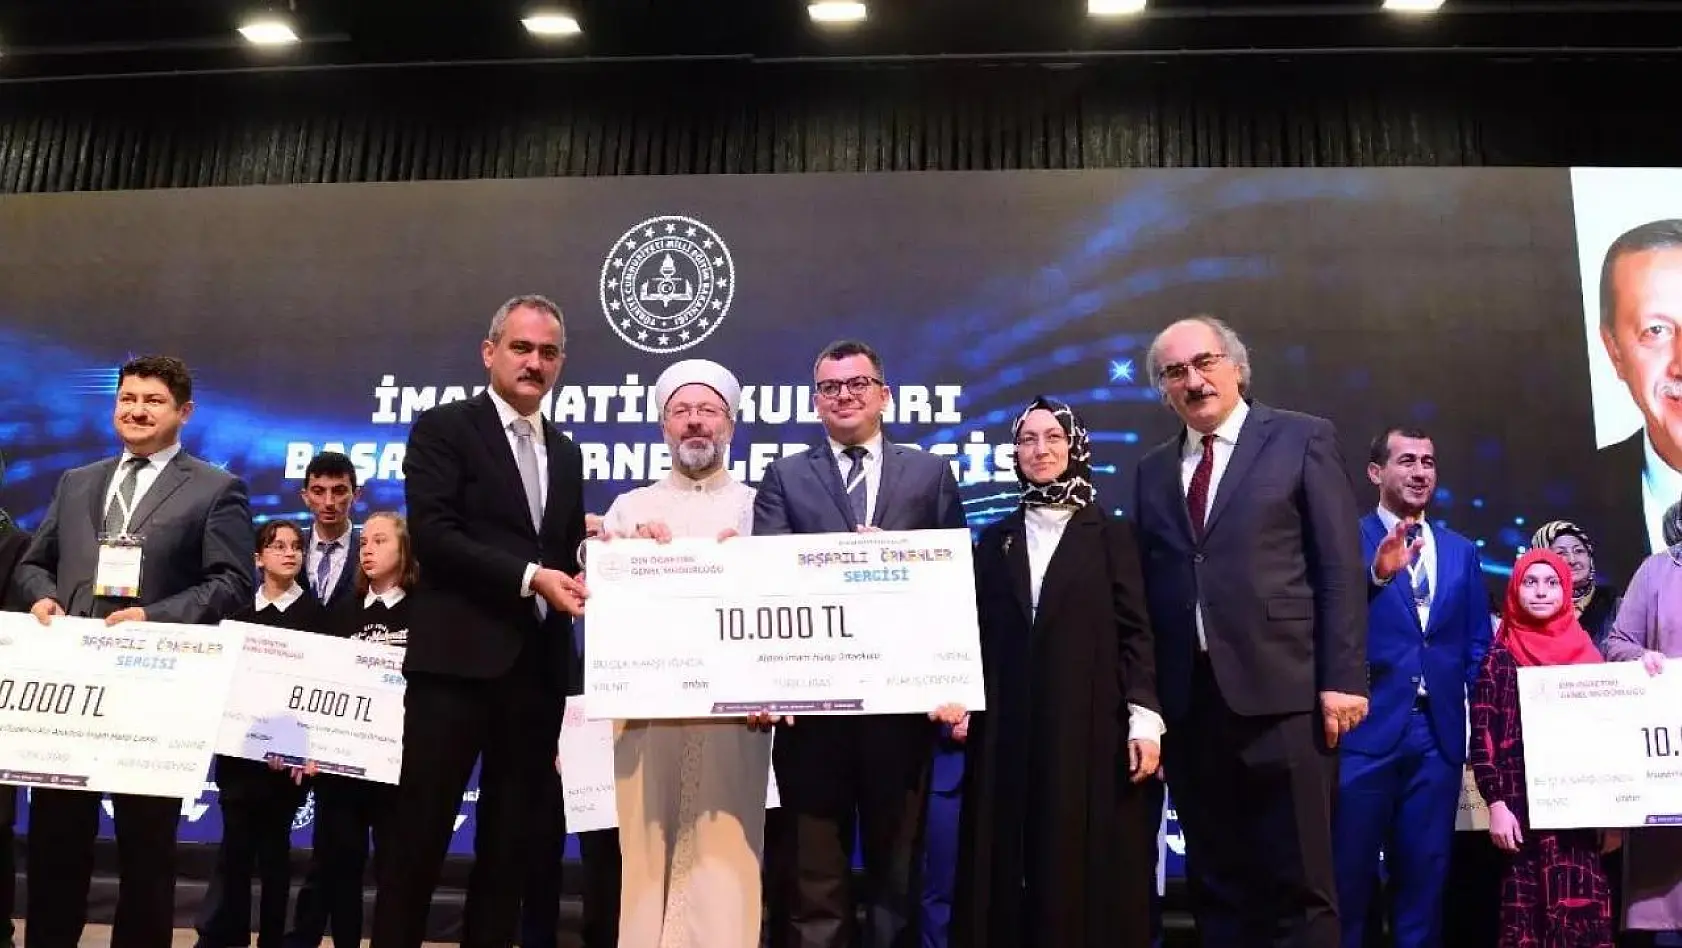 Kütahya Ahteri İmam-Hatip Ortaokulu 'Başarılı Örnekler Sergisi'nde Türkiye birincisi oldu